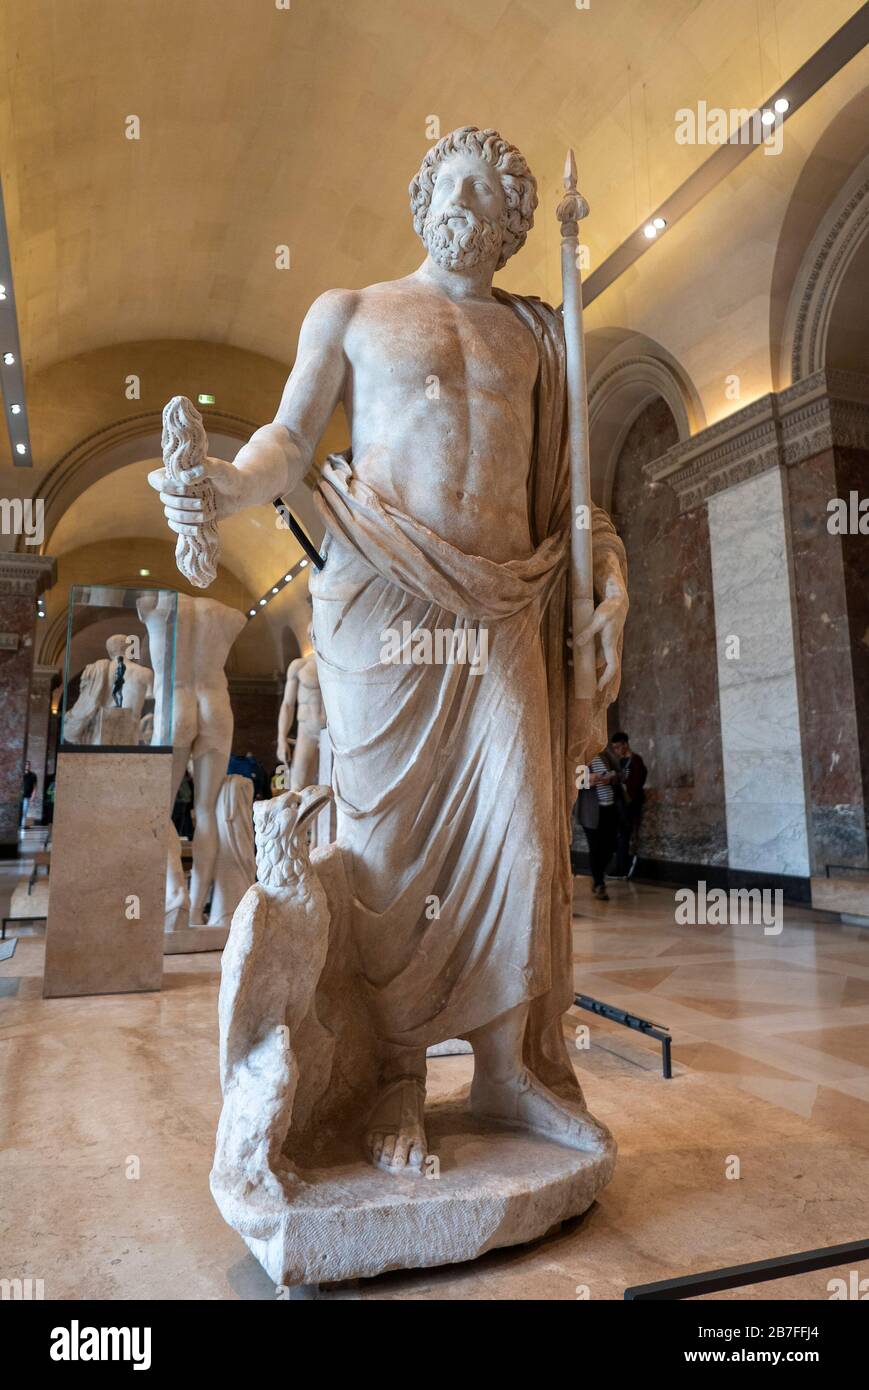 Zeus, dieu des skys et maître de l'Olympe, statue au Musée du Louvre, Paris, France, Europe Banque D'Images